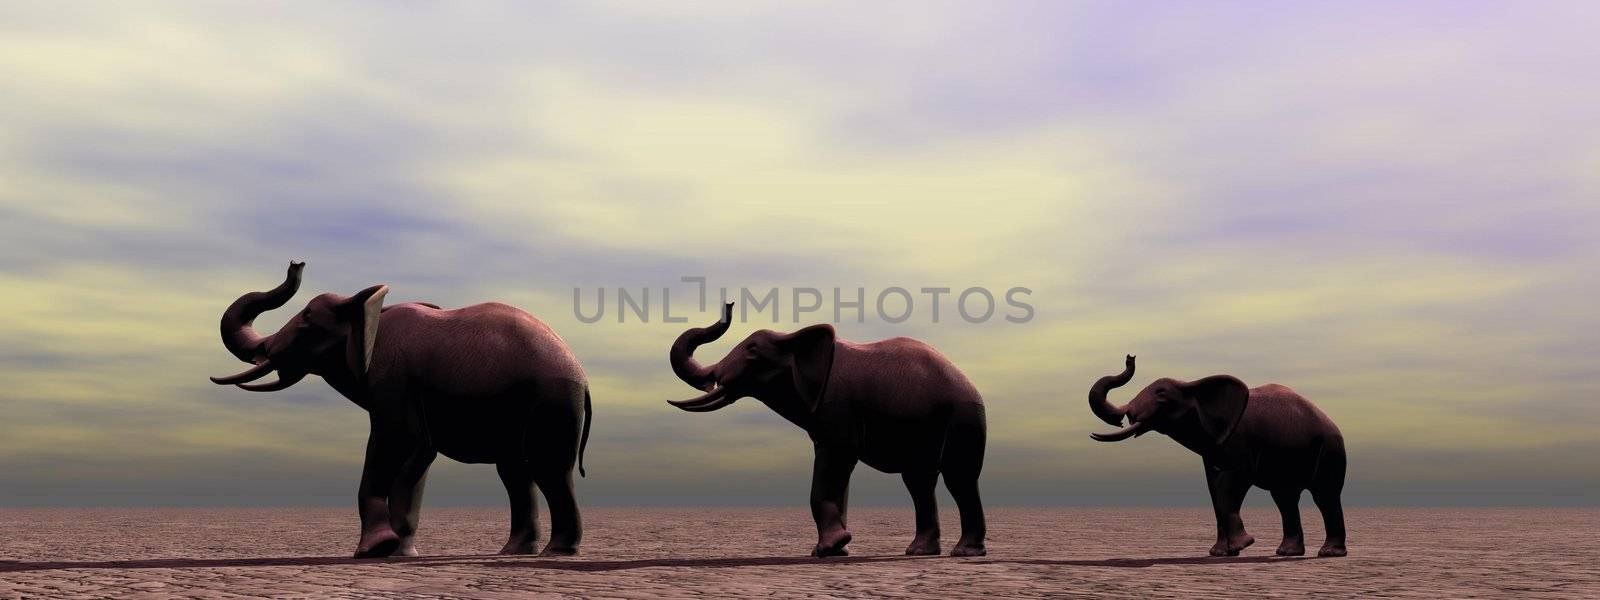 elephants by mariephotos